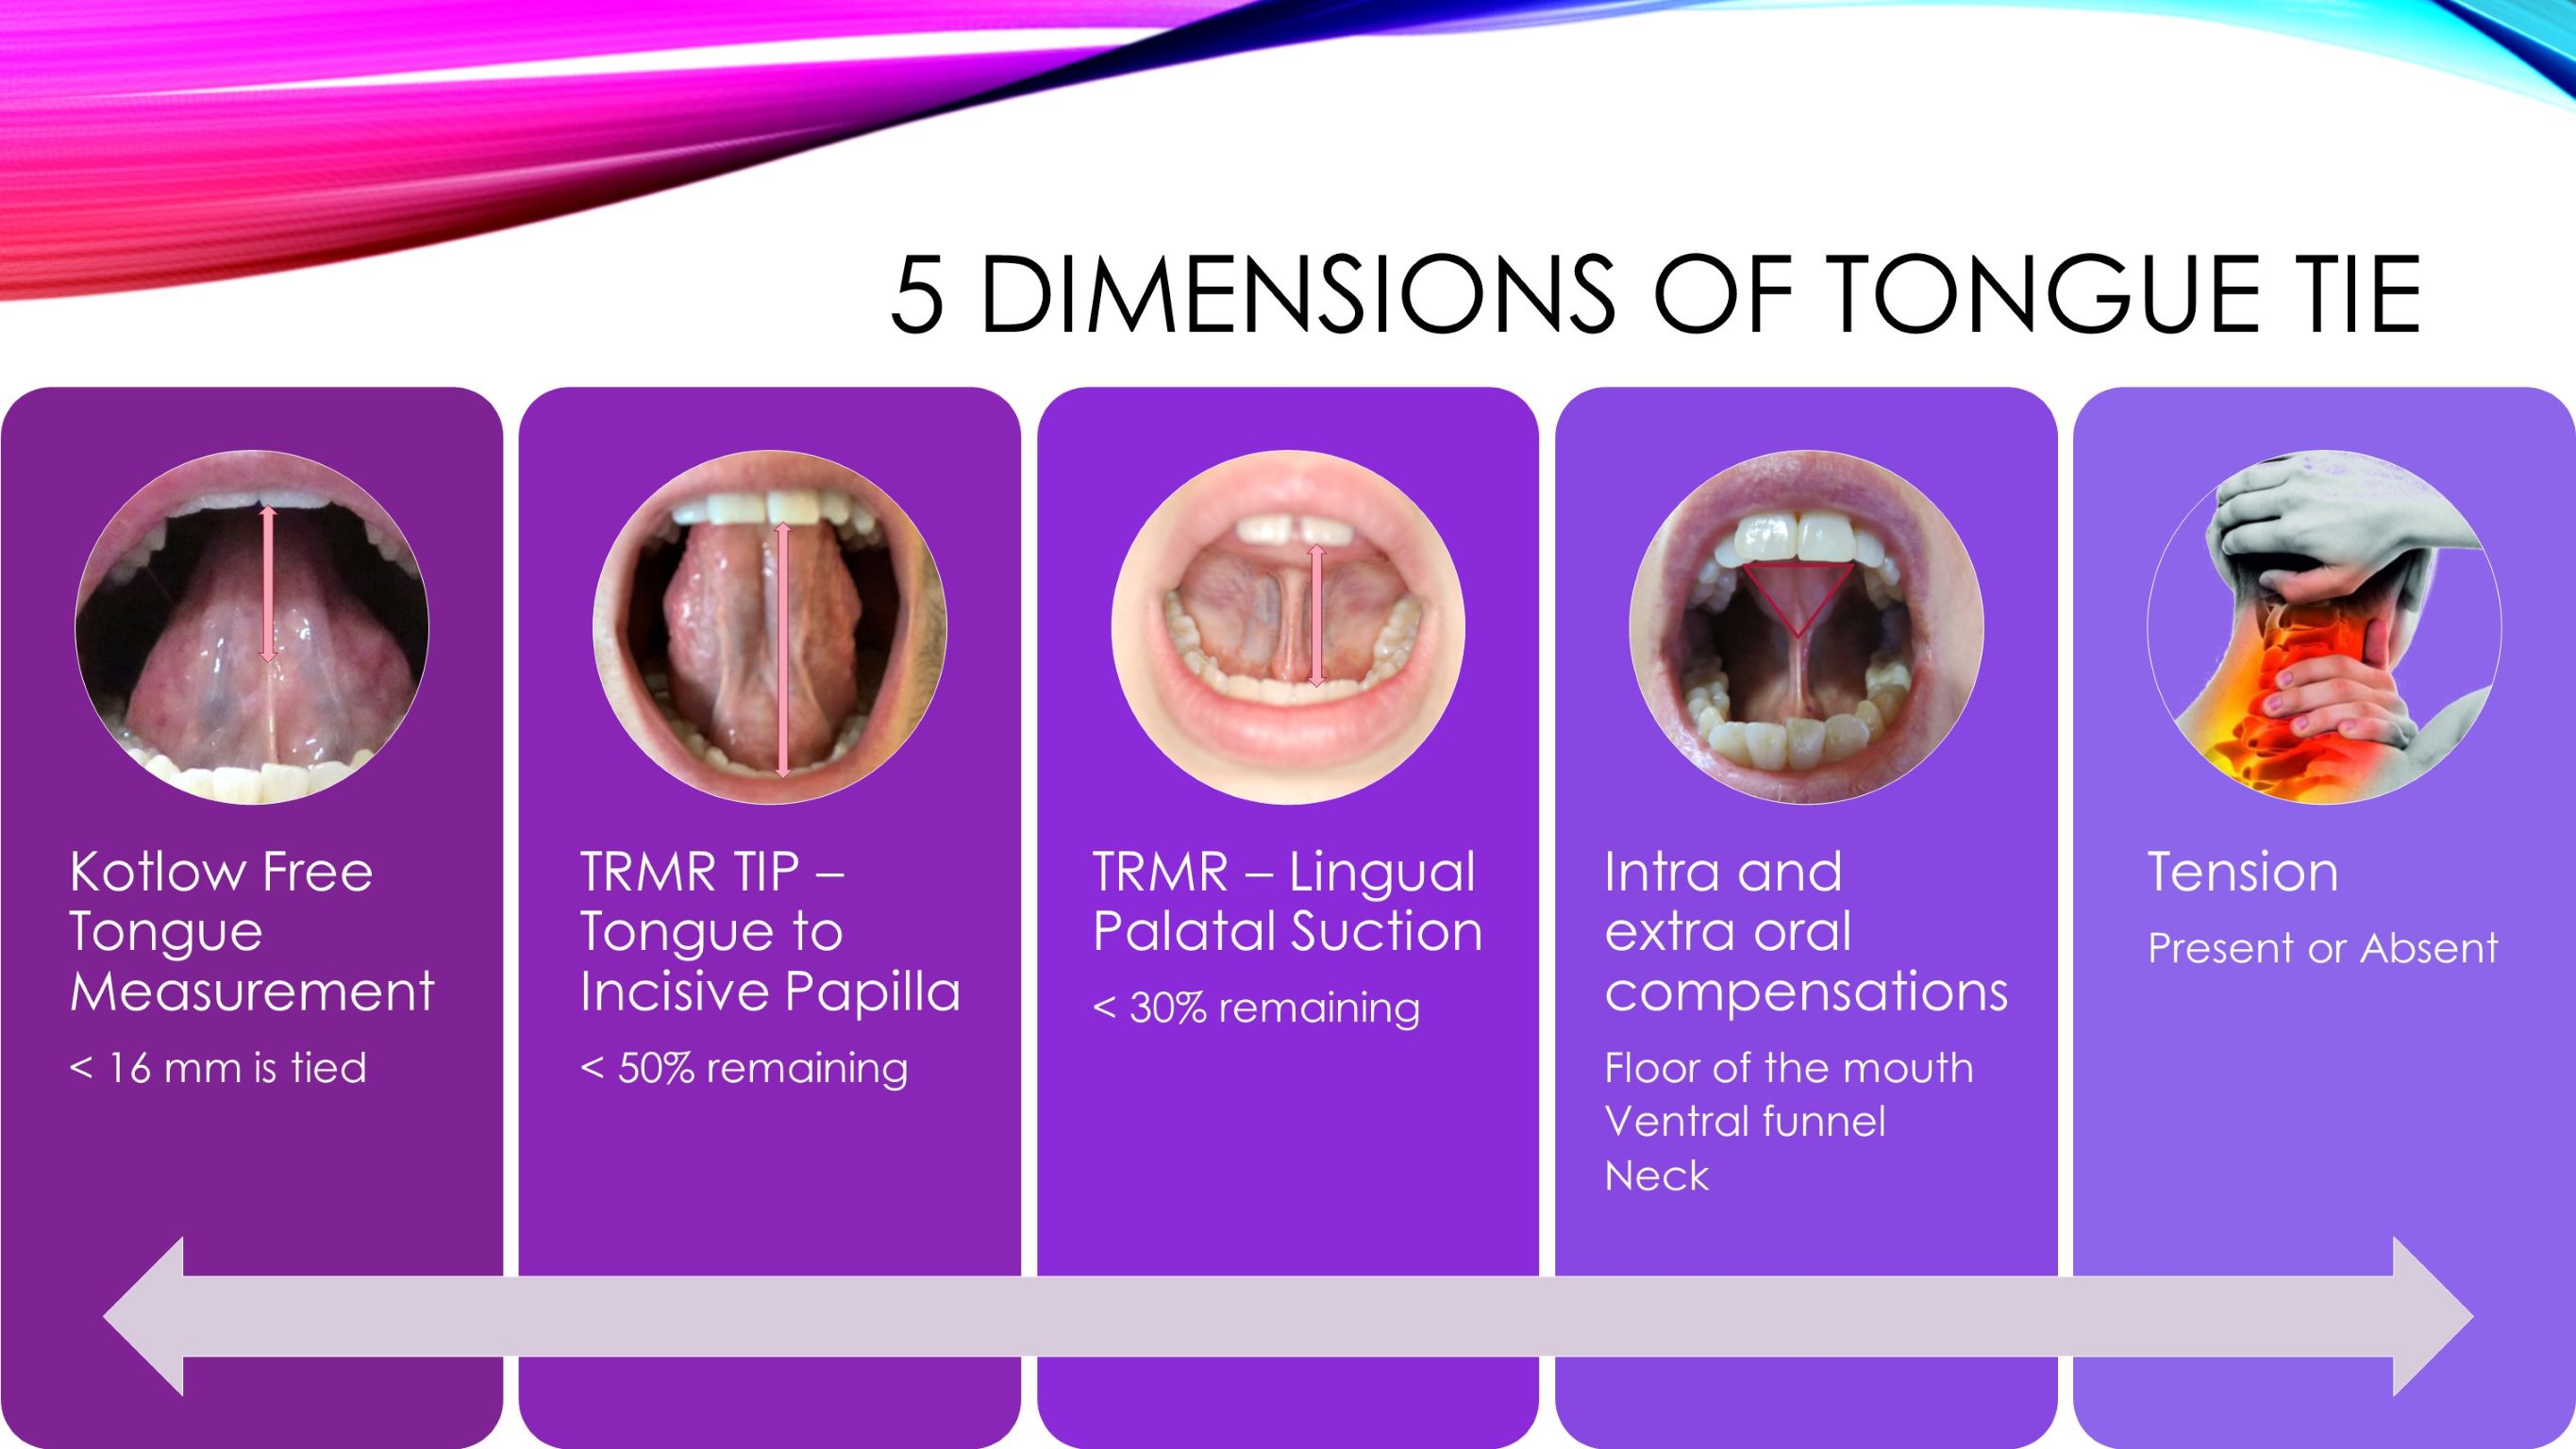 diagnosing a posterior tongue tie